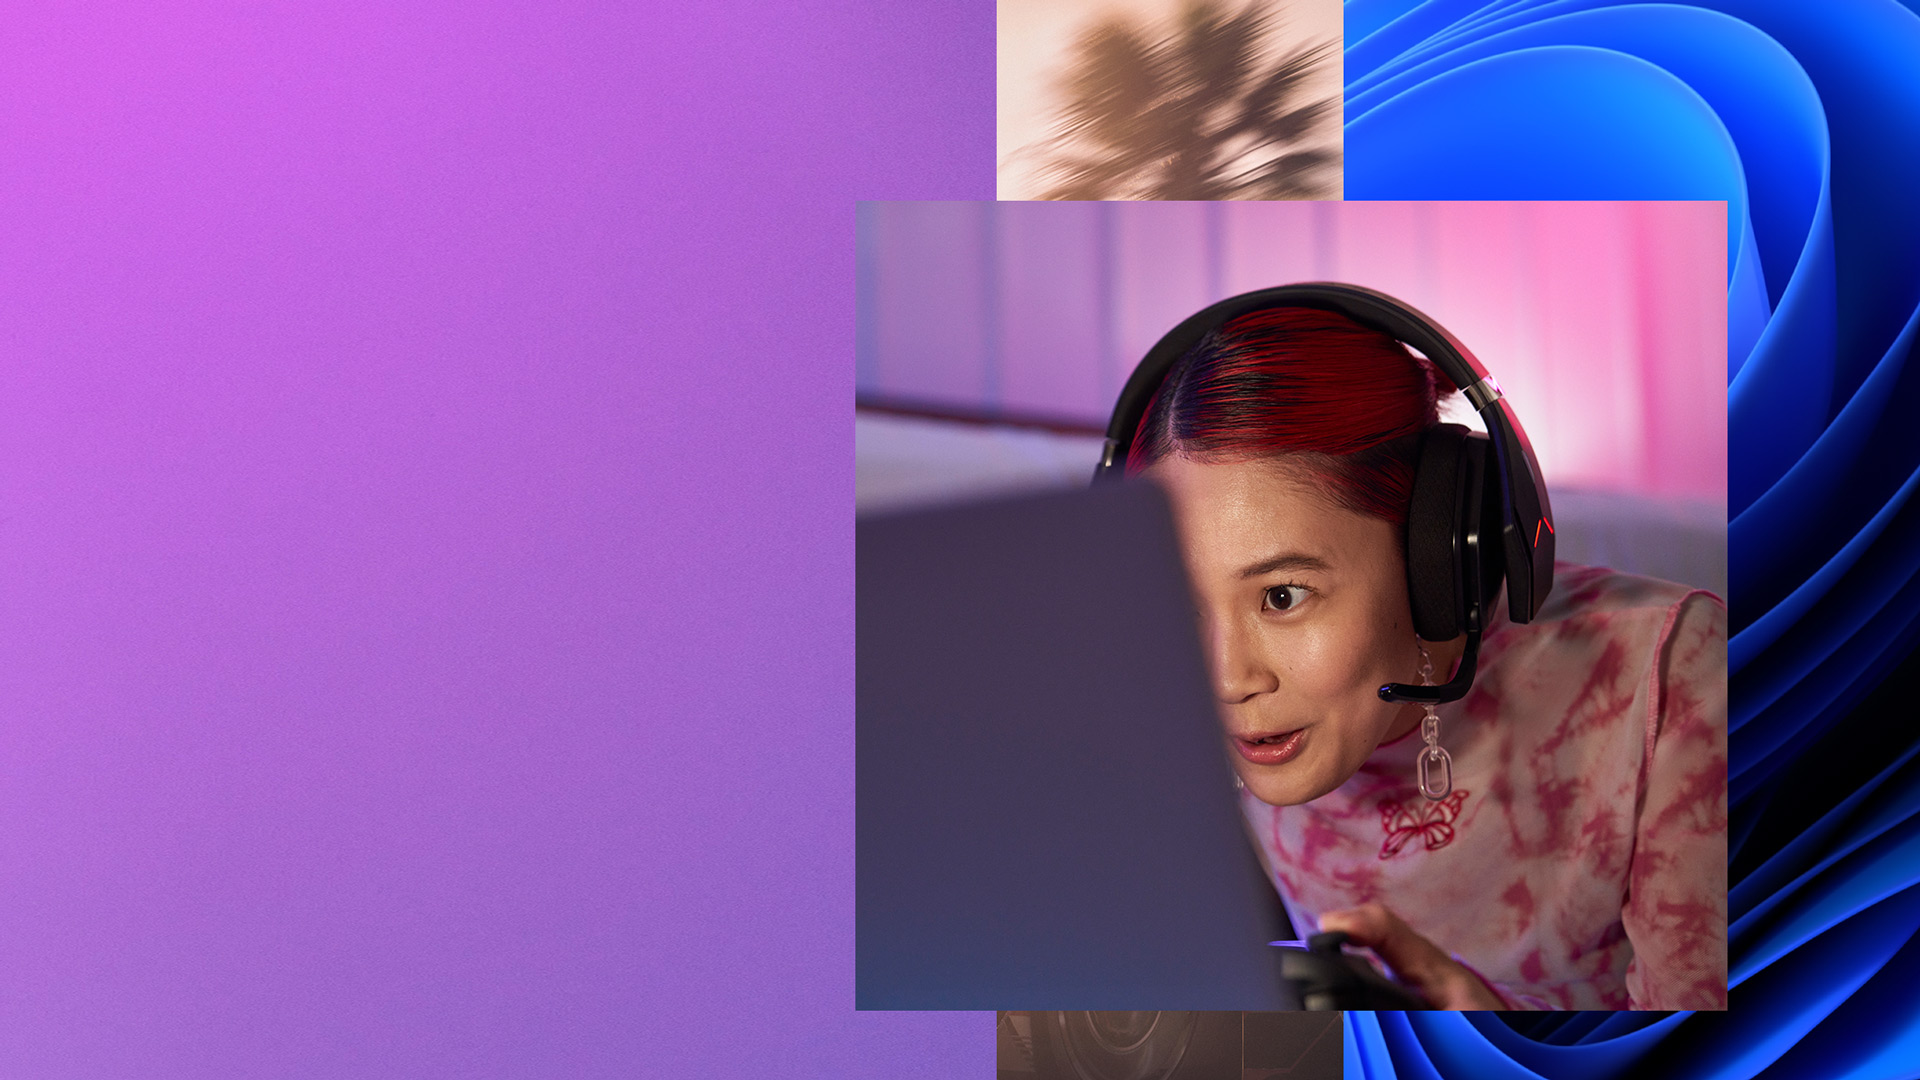 헤드폰을 쓰고 컨트롤러를 쥔 상태로 컴퓨터 화면을 보고 있는 소녀